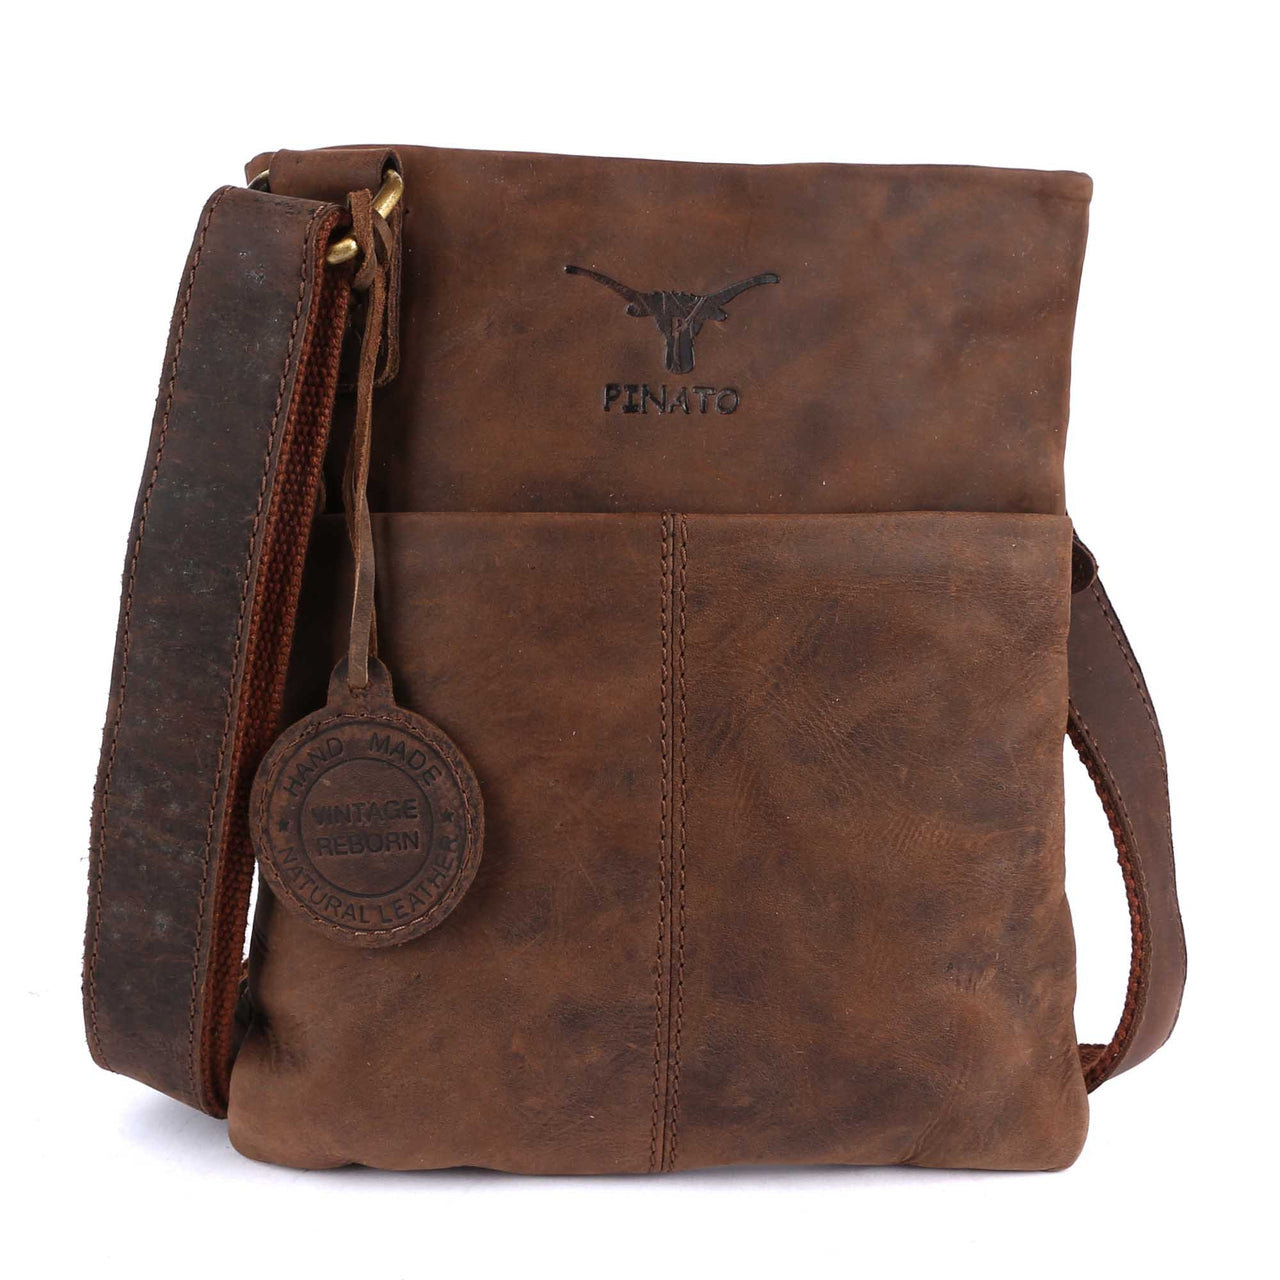 Pinato Genuine Leather Cognac Messenger Bag for Men & Women (PL-4318)